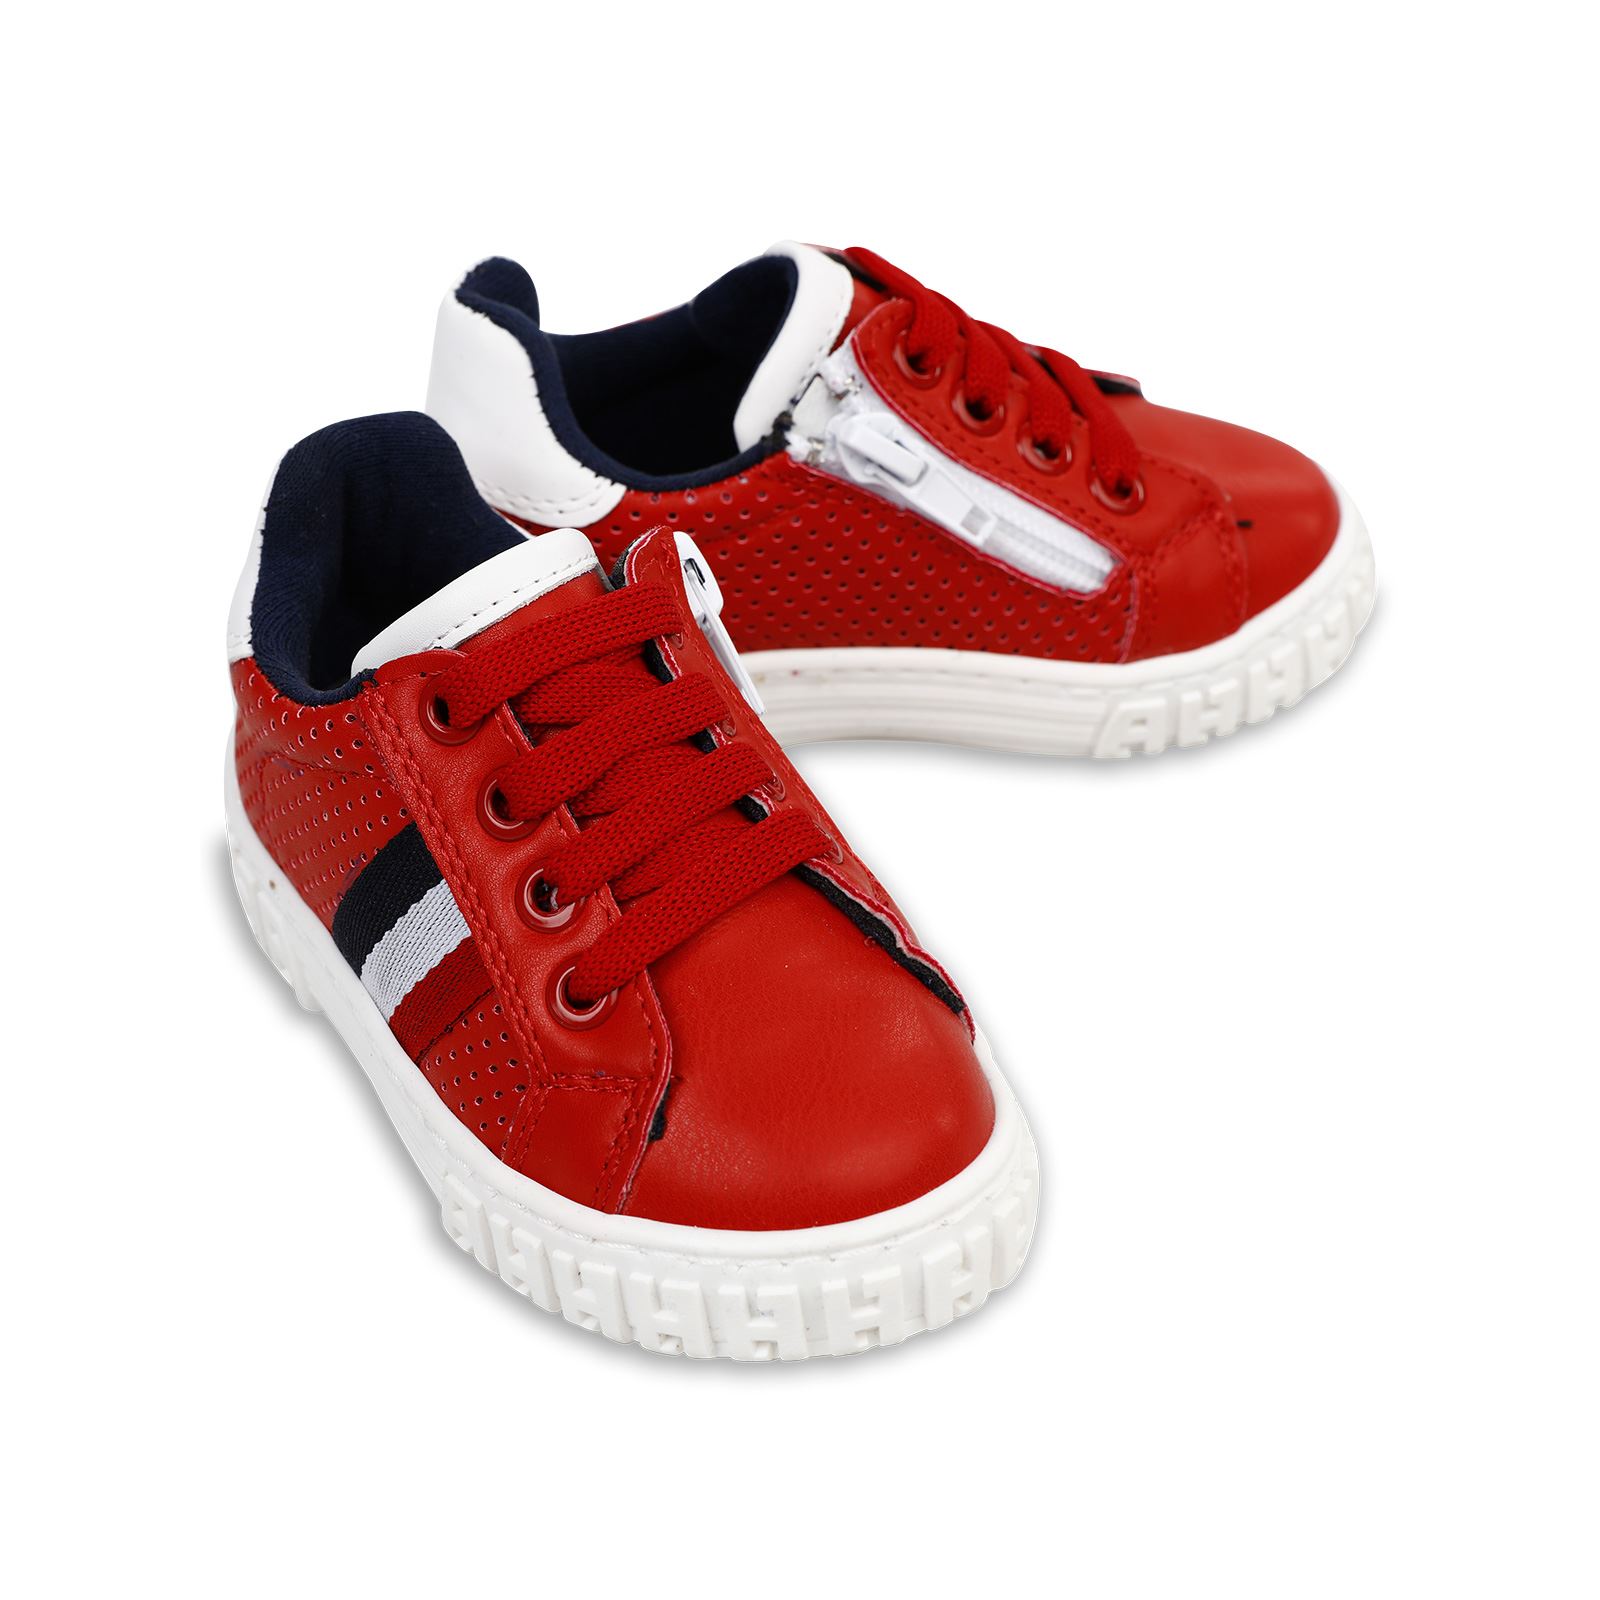 Harli Erkek Çocuk Spor Ayakkabı 21-25 Numara Kırmızı